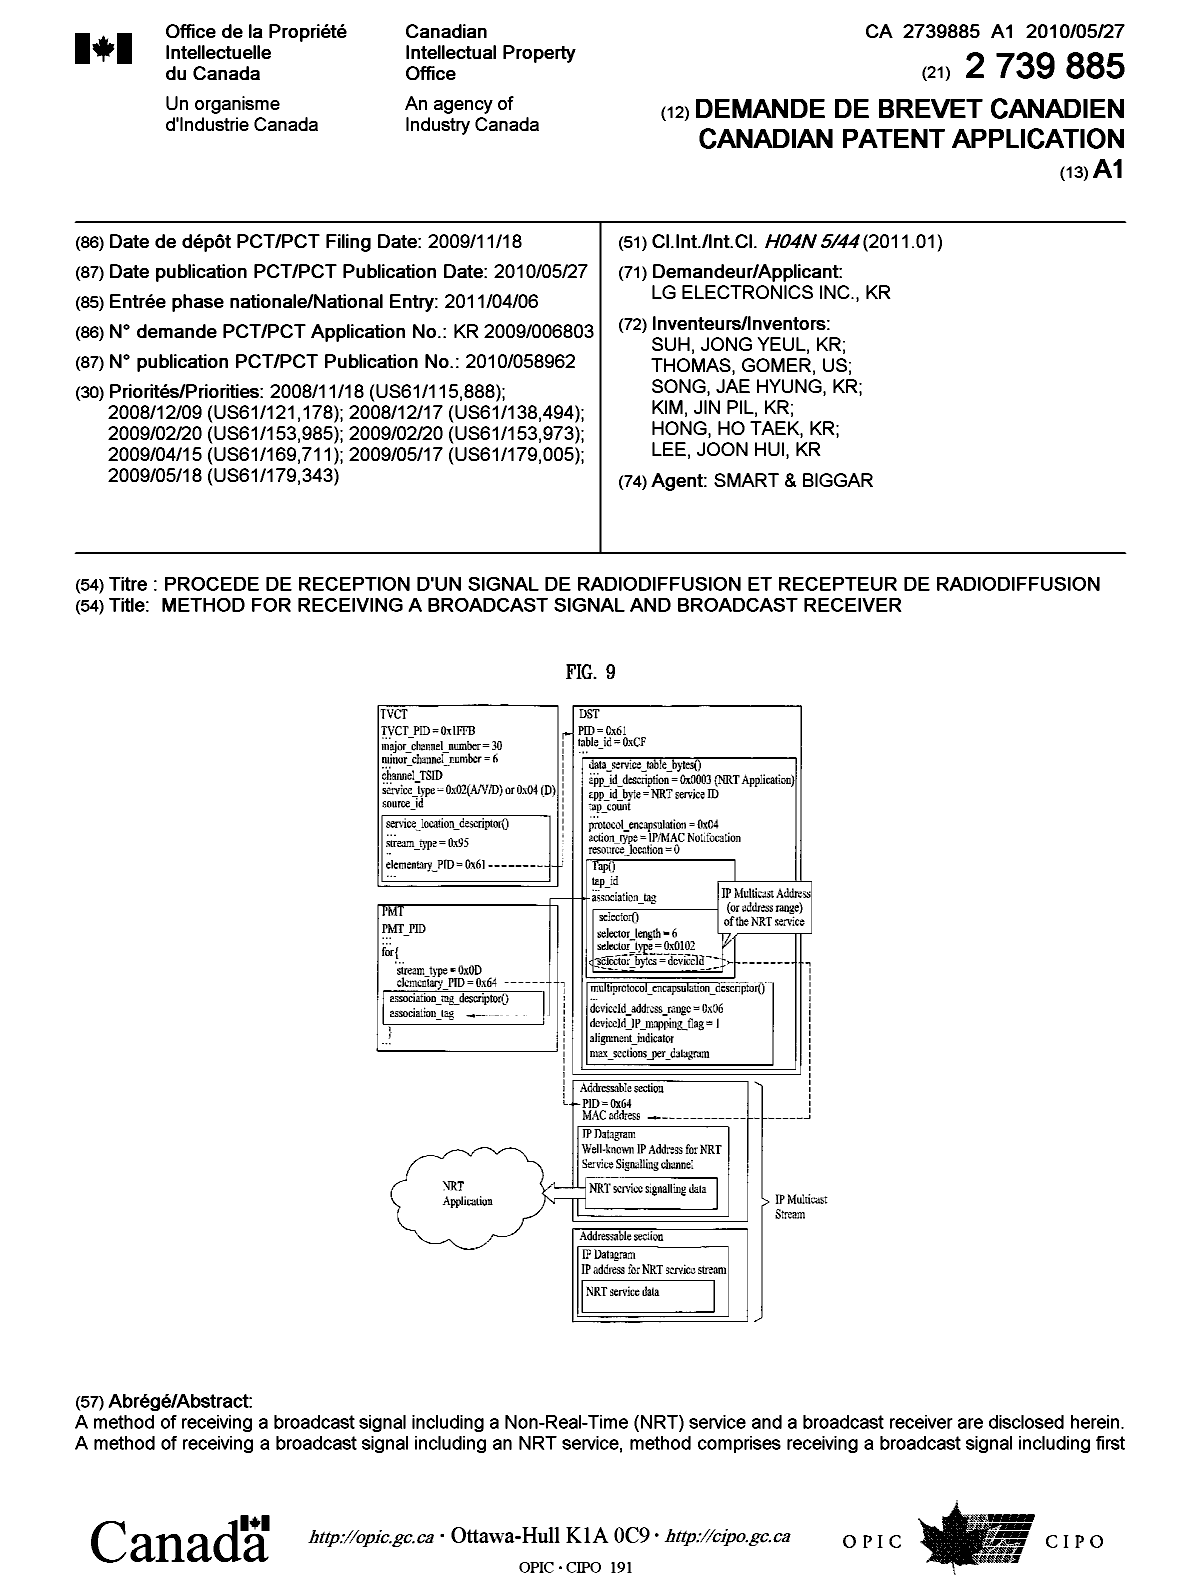 Document de brevet canadien 2739885. Page couverture 20110608. Image 1 de 2